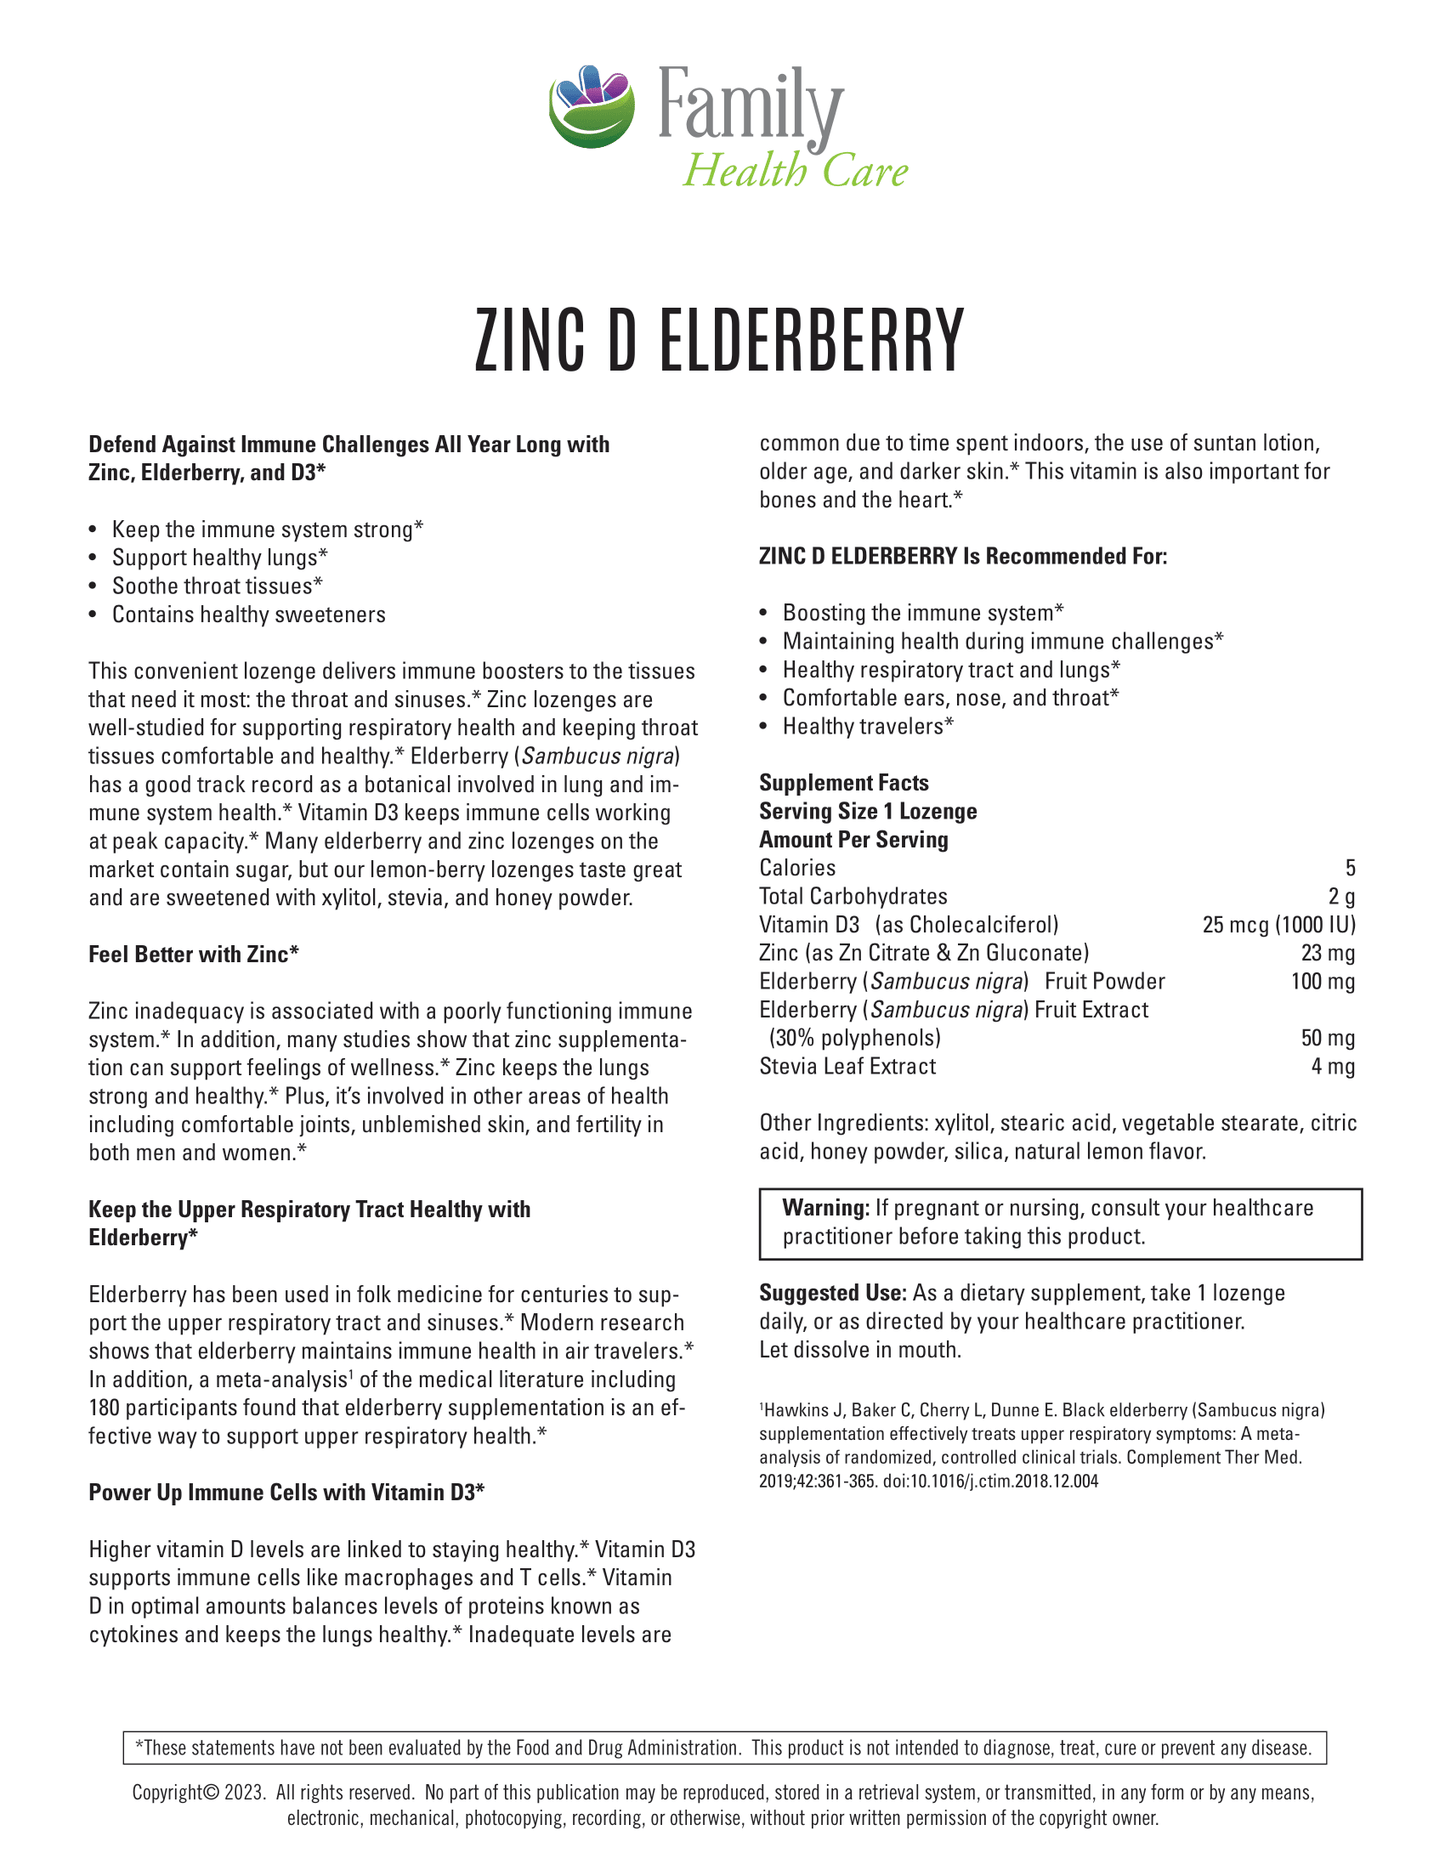 Zinc D Elderberry